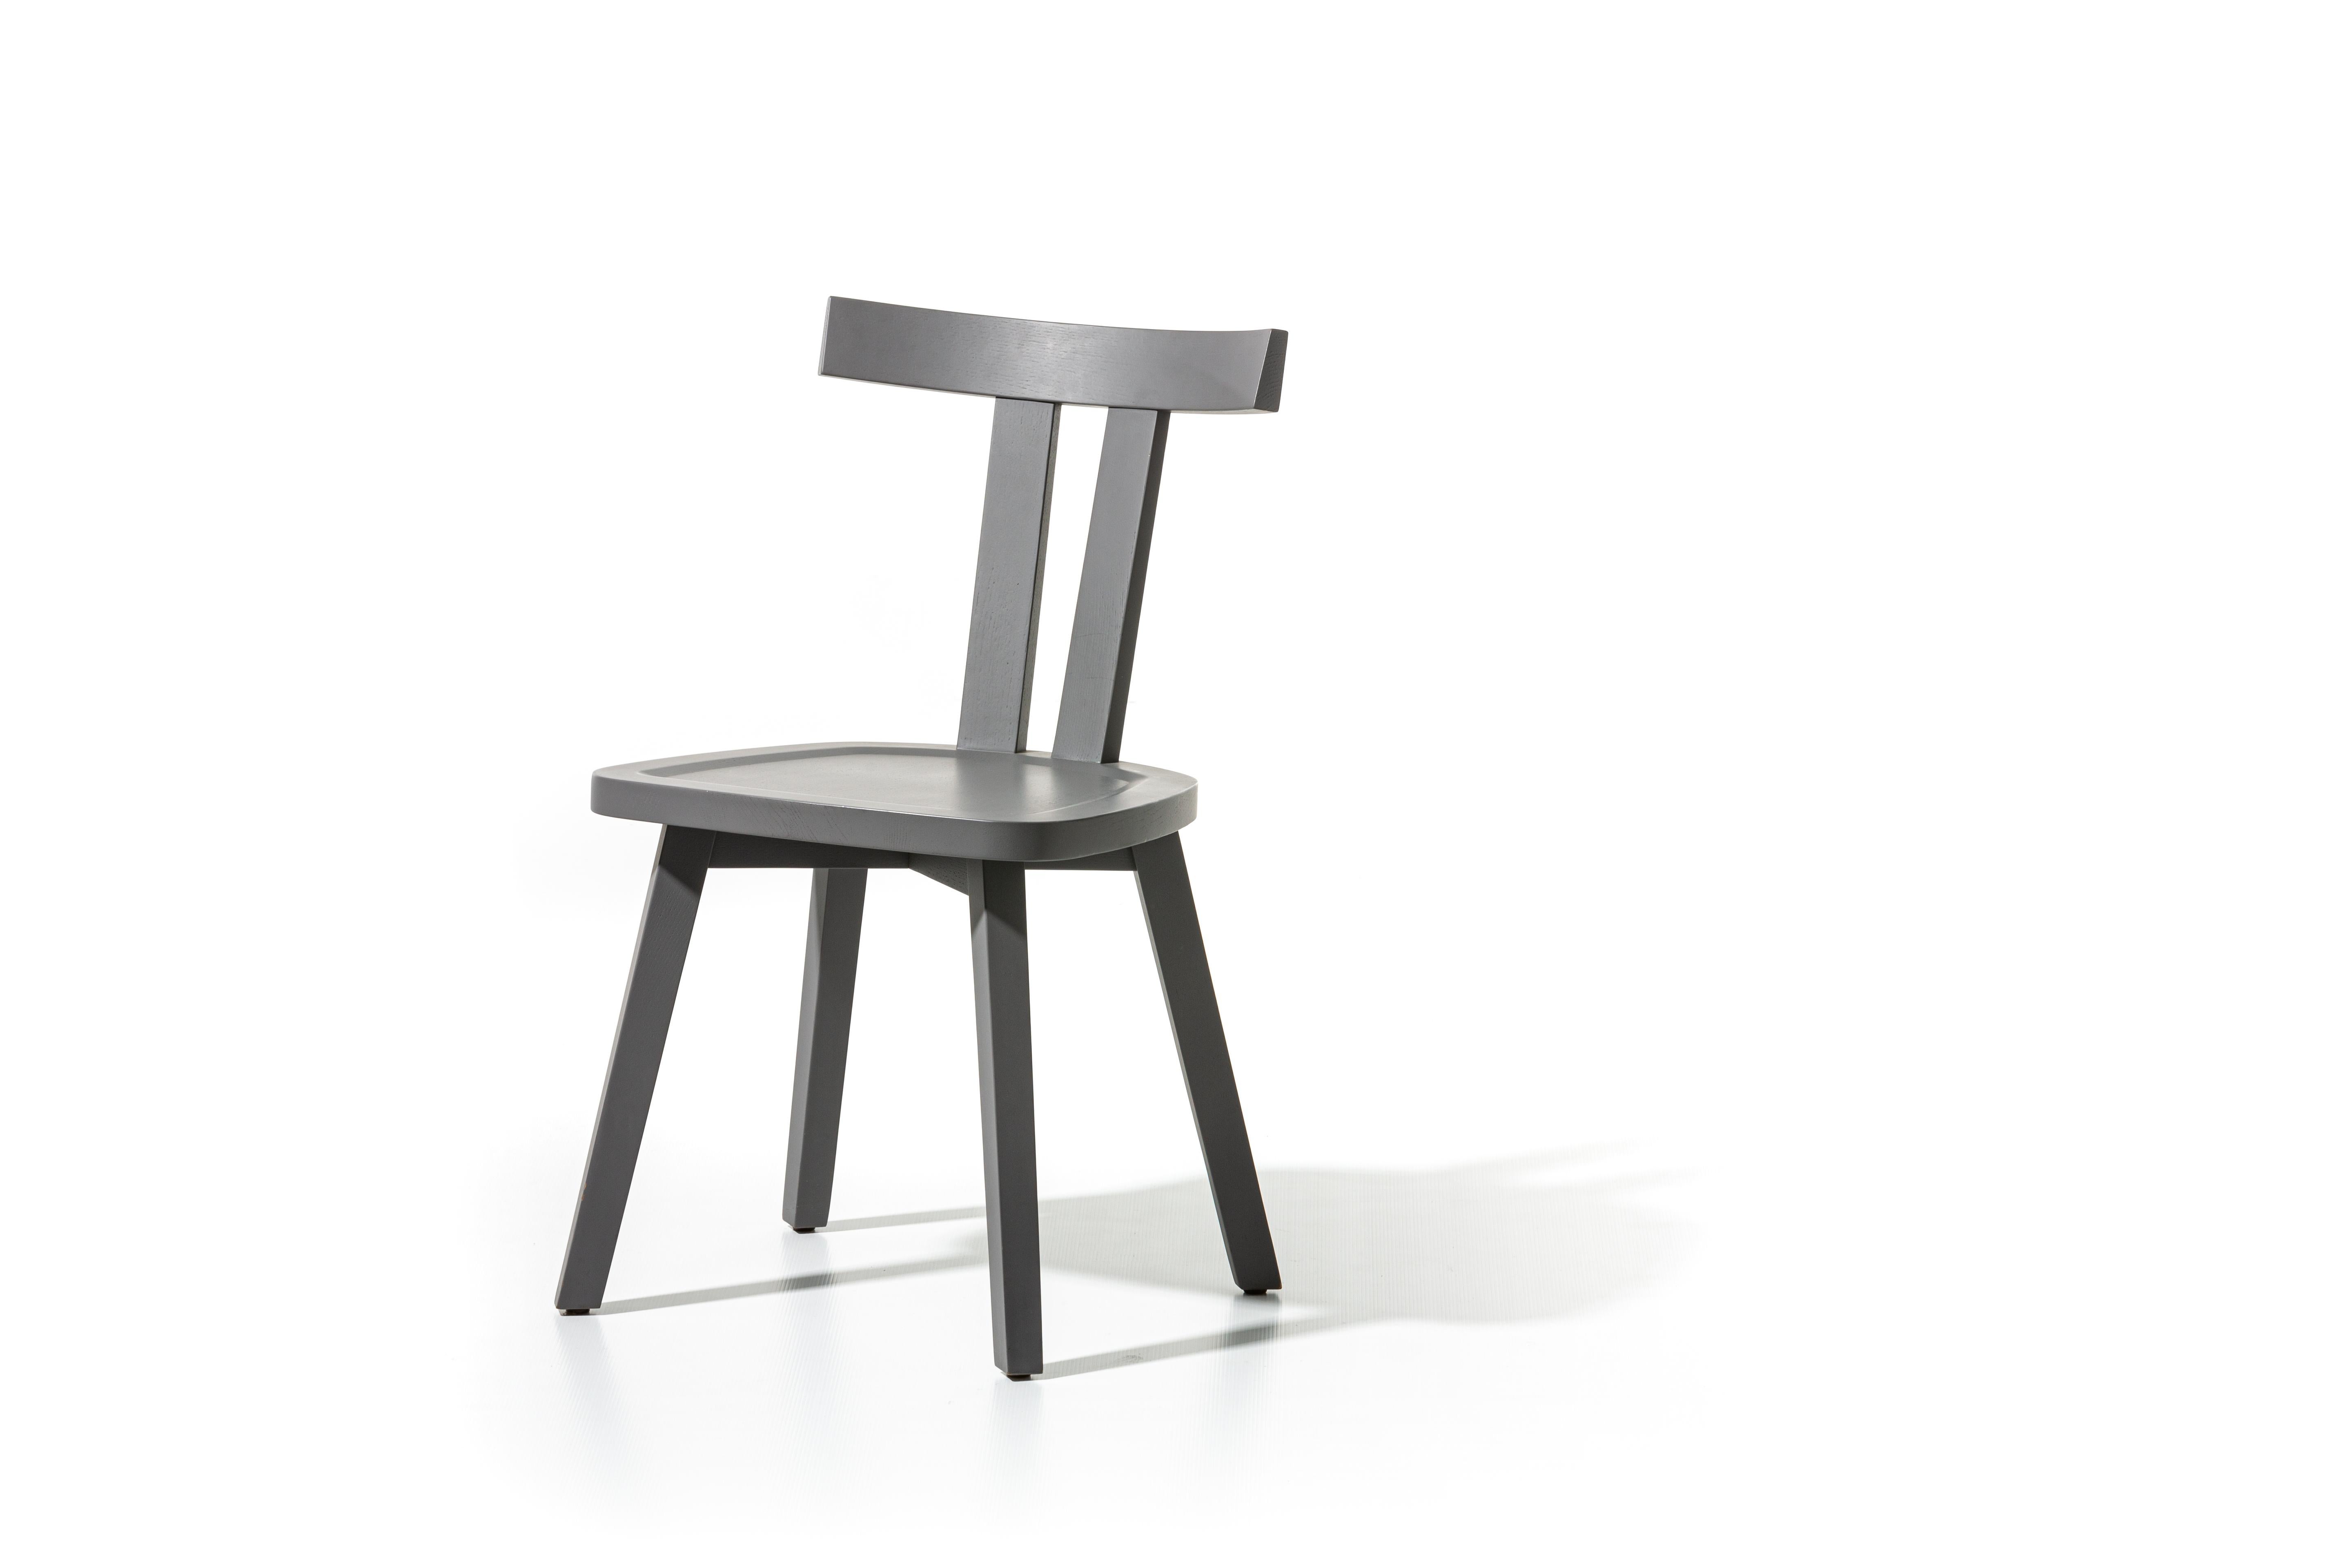 Der Stuhl Gray 23 zeichnet sich durch eine besondere und minimale Rückenlehne aus: drei große Holzlatten, zwei vertikale und eine obere horizontale, die den Sitz umschließen. Das Gestell besteht aus naturlackiertem Canaletto-Nussbaum, gebleichter